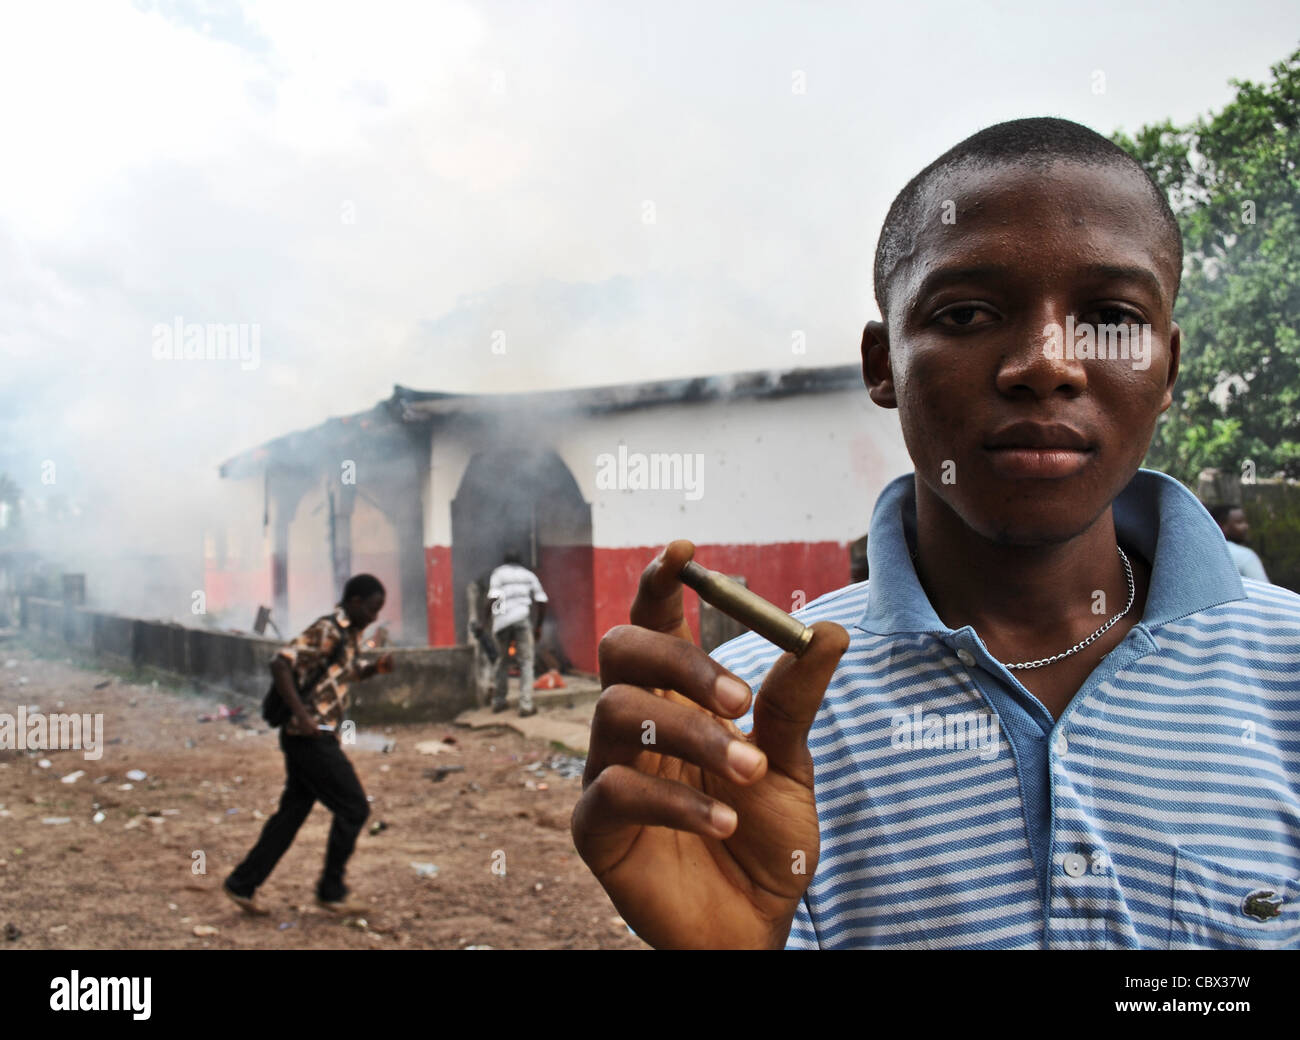 Balles tirées par la police lors de la violence politique en Bo, avant d'élections de 2012 en Sierra Leone (Bureau de l'APC en arrière-plan) Banque D'Images